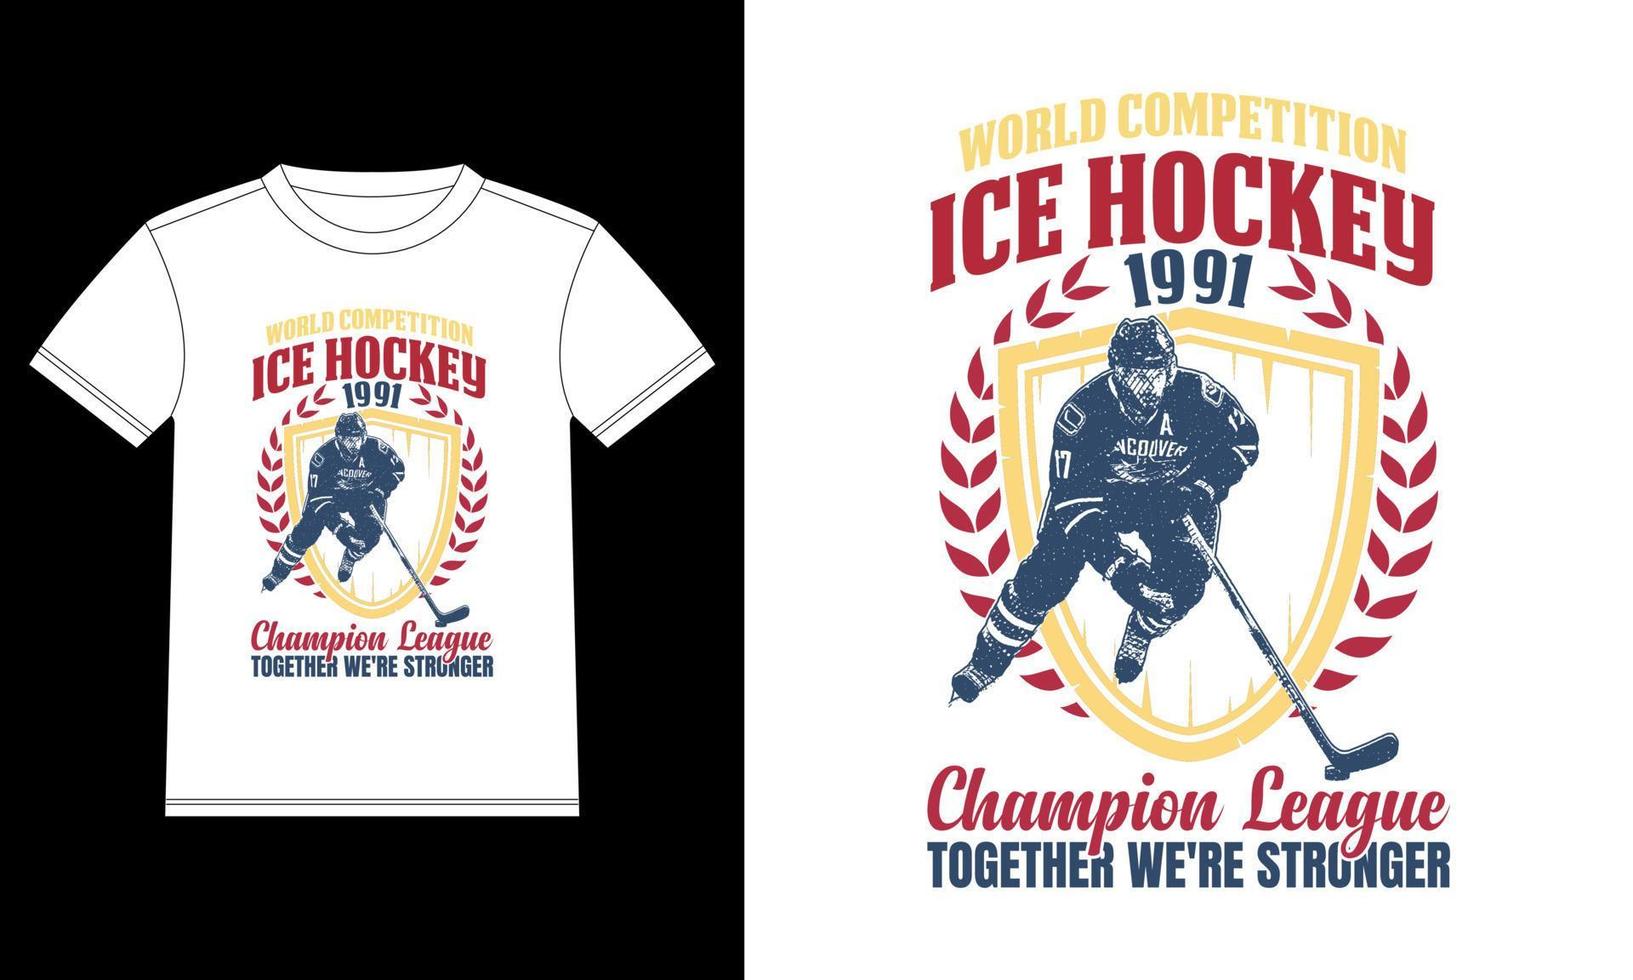 compétition mondiale de hockey sur glace 1991 ligue des champions ensemble, nous sommes plus forts modèle de conception de t-shirt, autocollant de fenêtre de voiture, pod, couverture, arrière-plan noir isolé vecteur